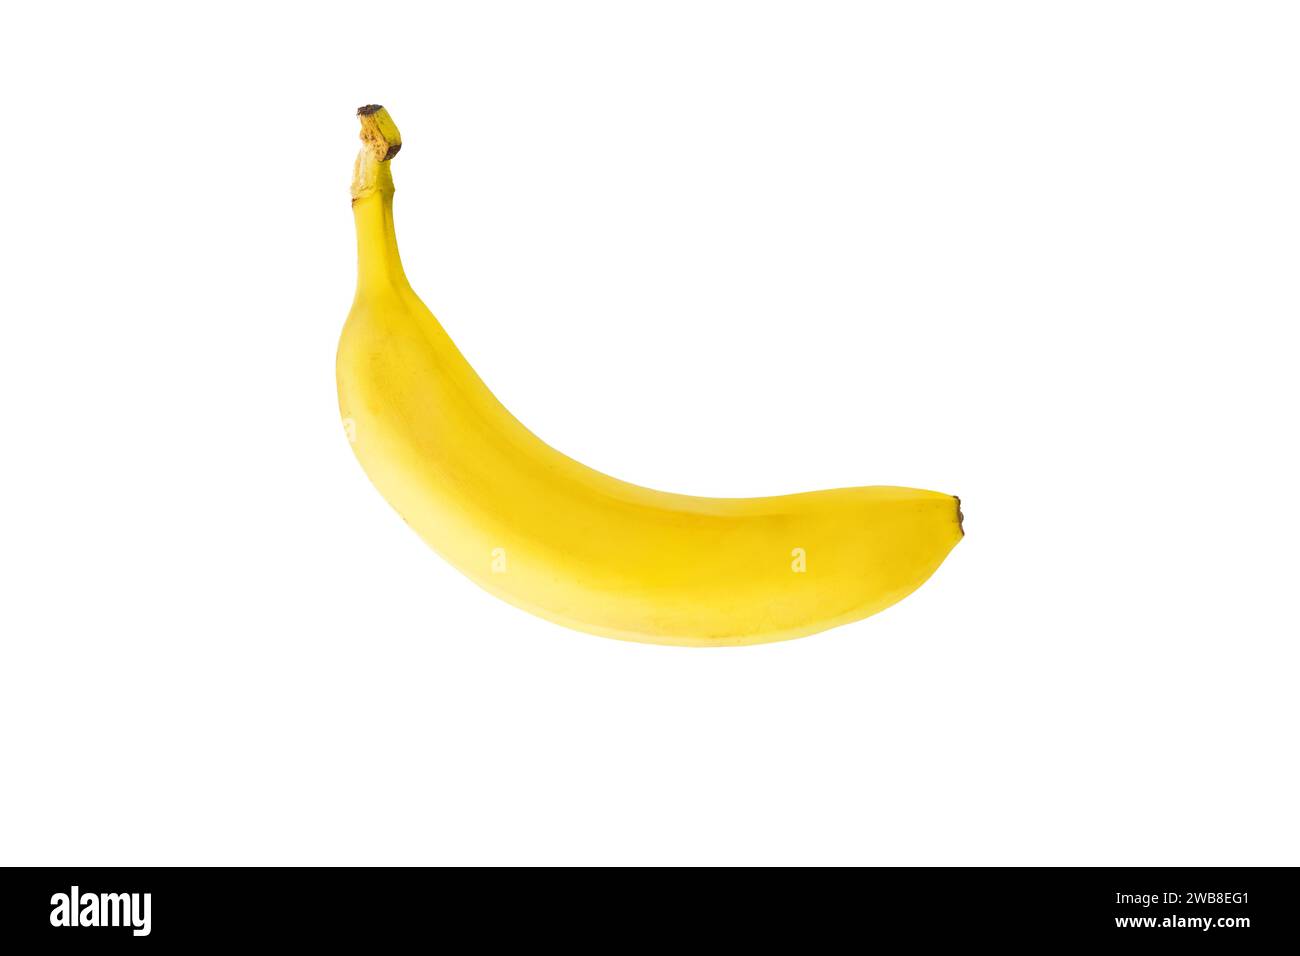 Vue de dessus de banane jaune prise en studio isolé sur fond blanc Banque D'Images